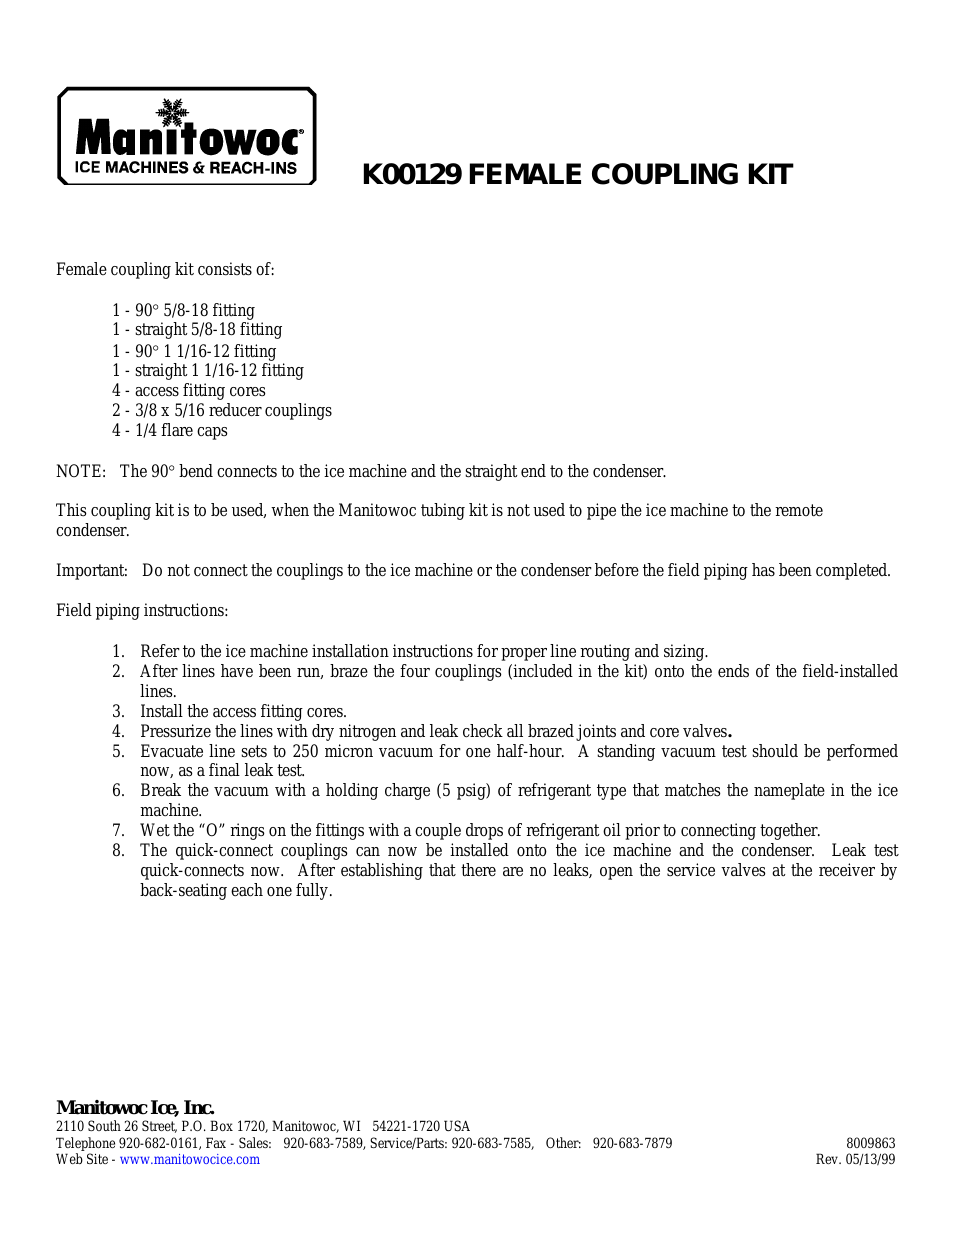 FEMALE COUPLING KIT K00129